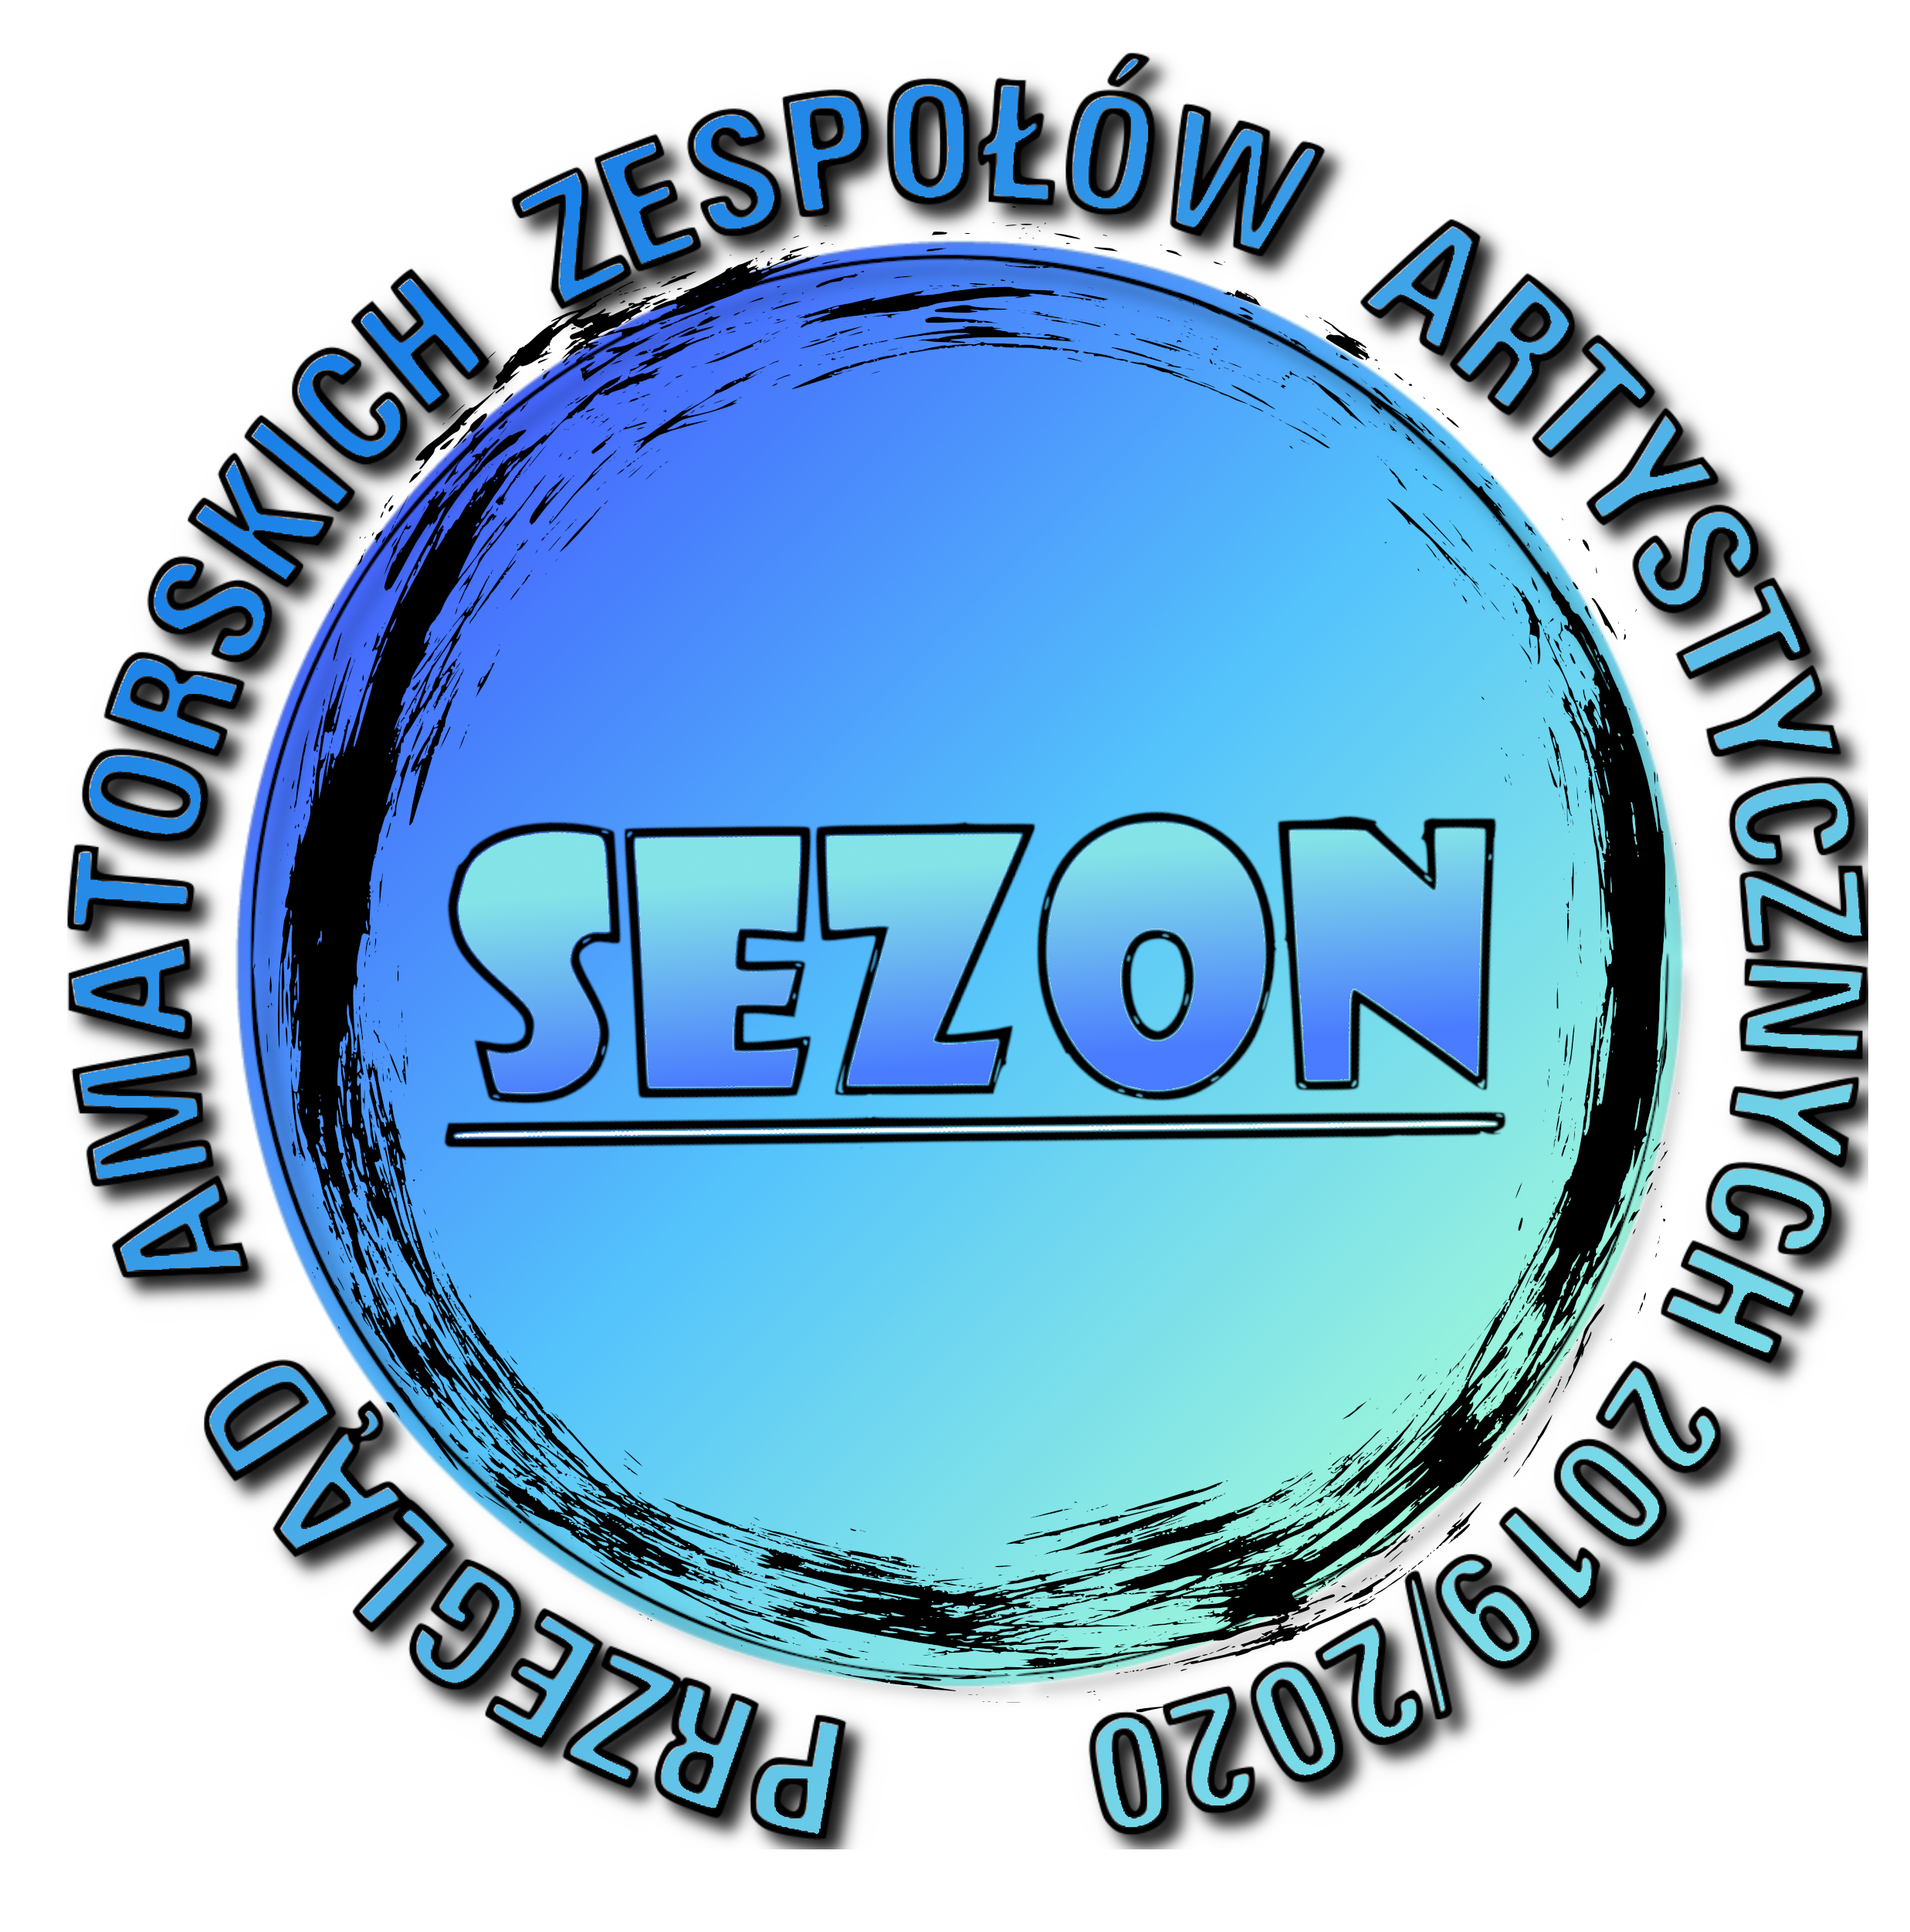 Werdykt Przeglądu SEZON 2020 w kategorii recytatorskiej